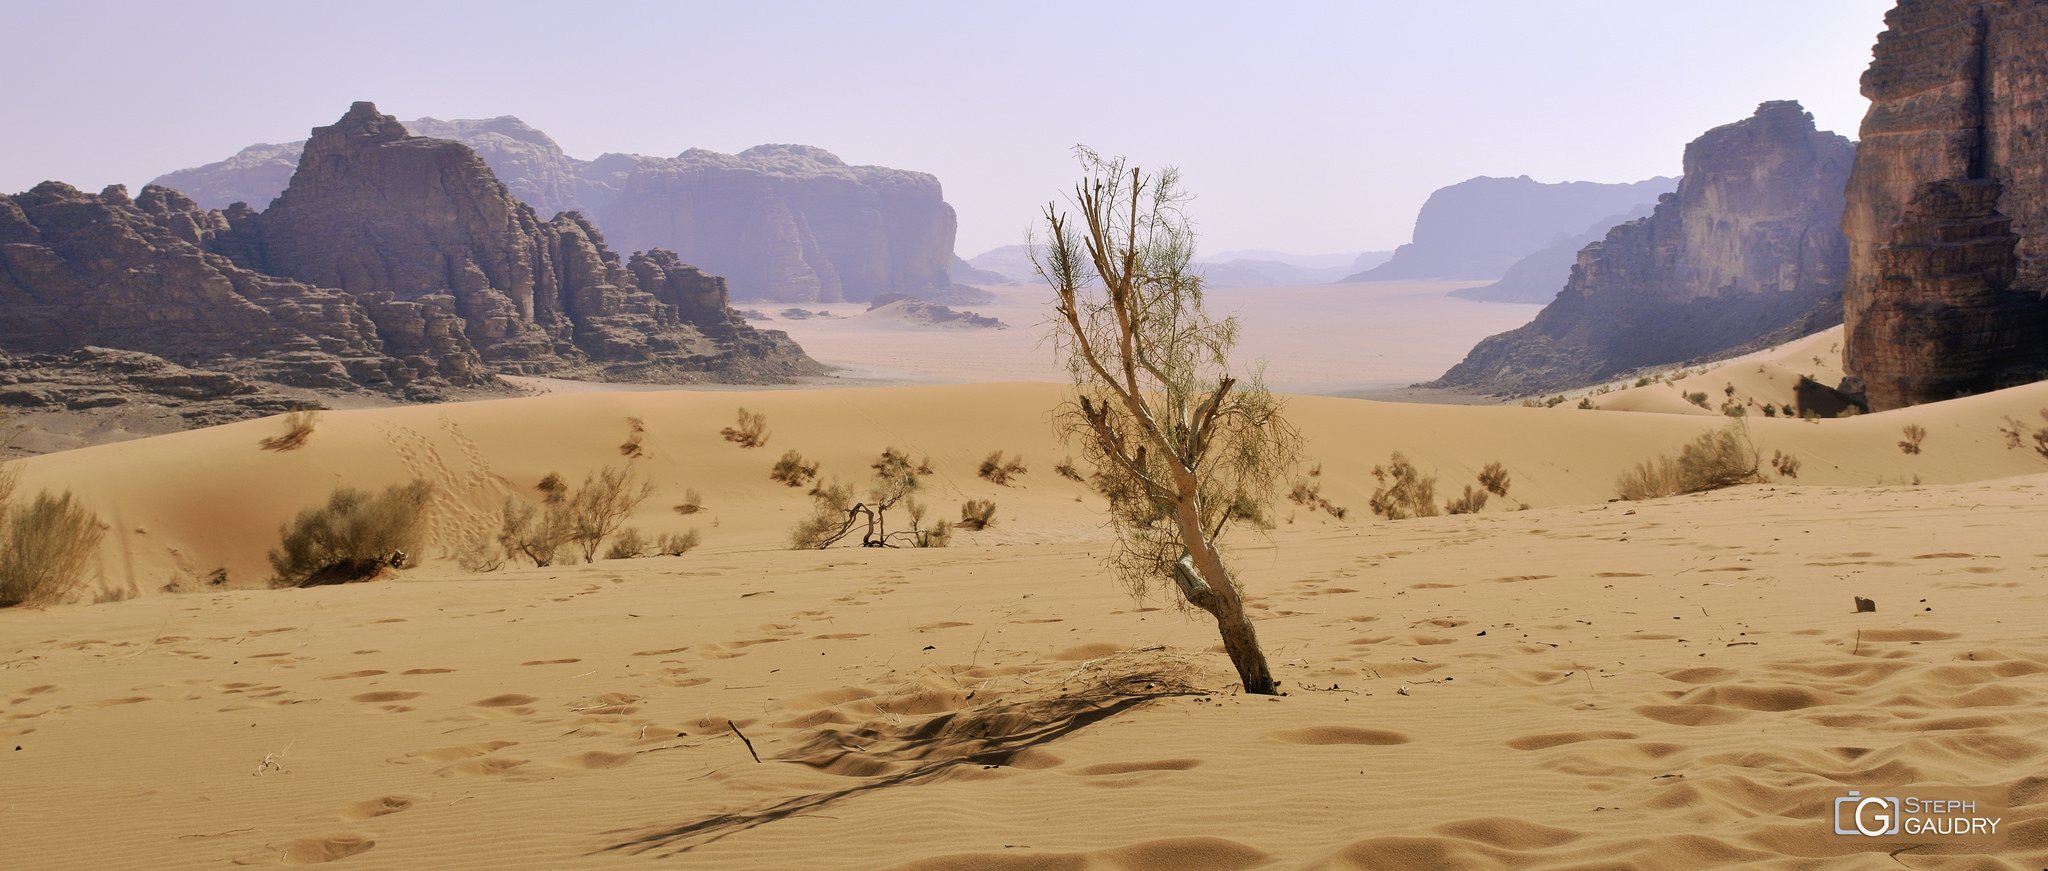 Wadi Rum desert (JOR) [Click to start slideshow]